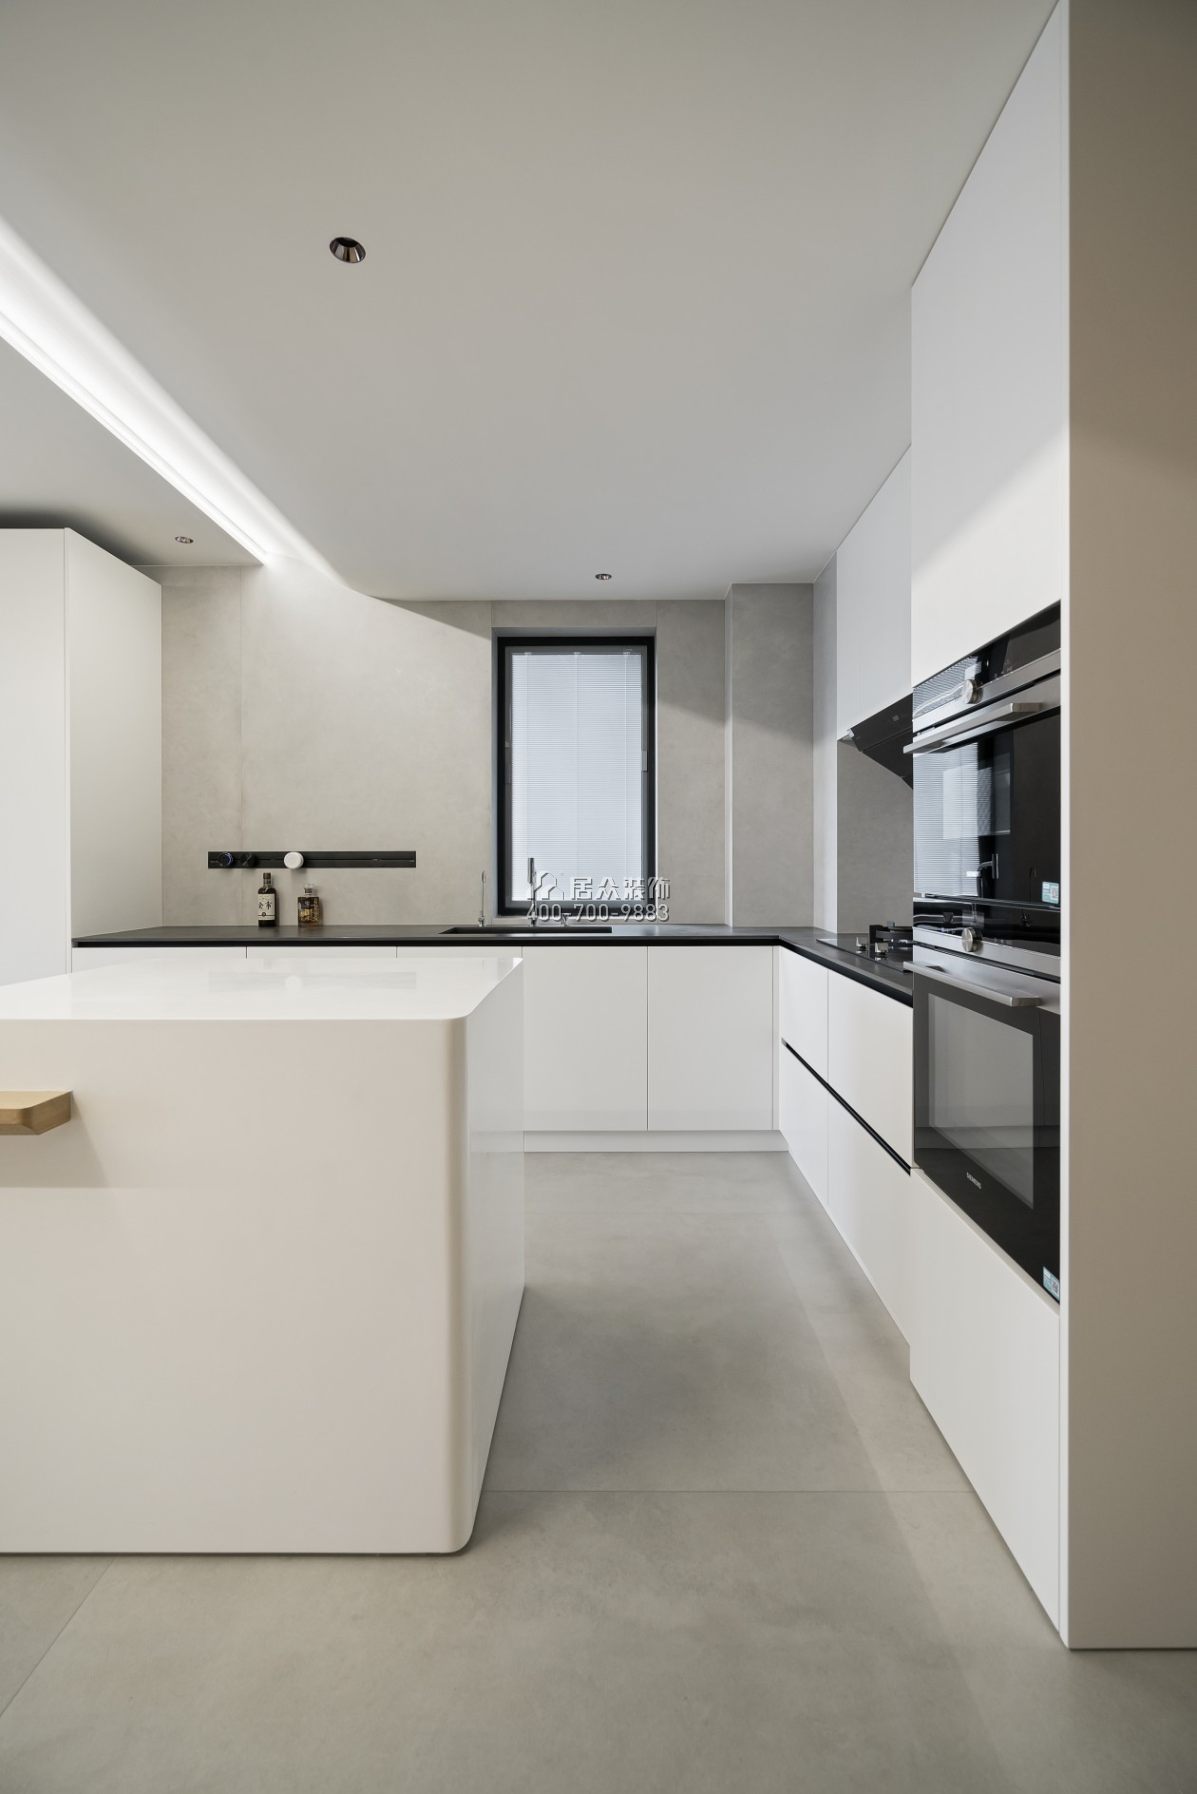 黃埔雅苑一期120平方米現代簡約風格平層戶型廚房裝修效果圖